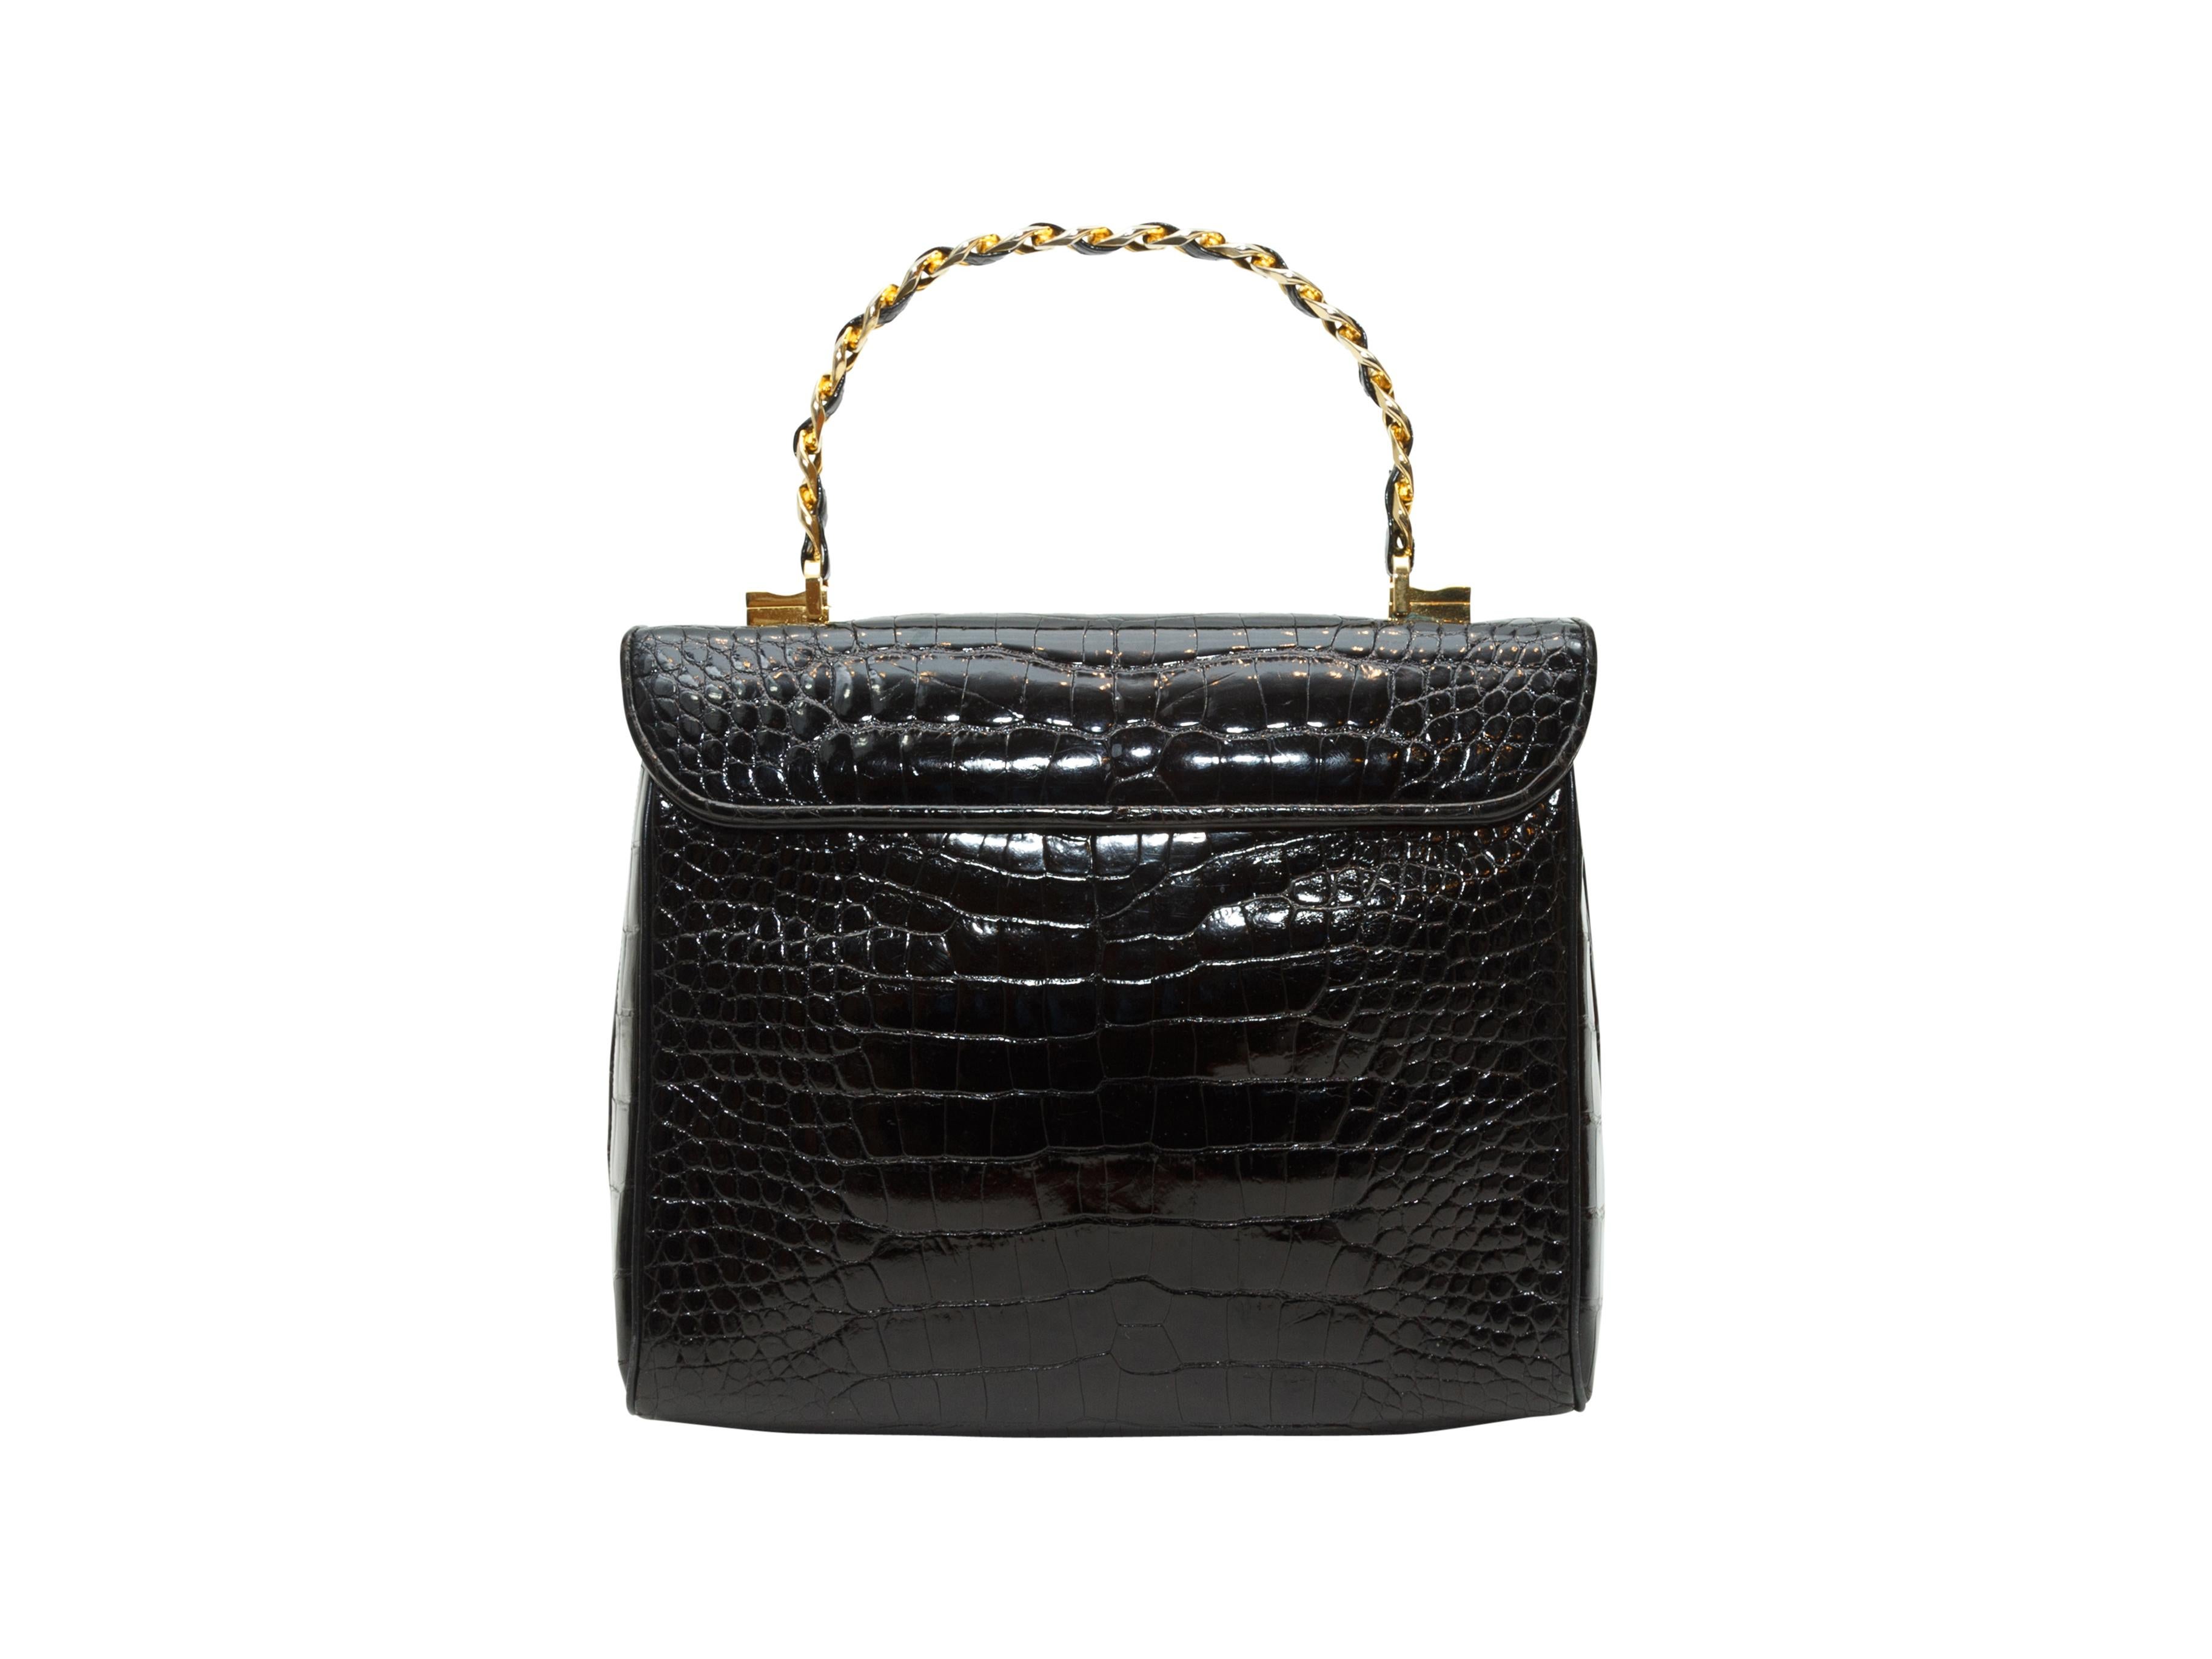 Product details: Vintage black alligator skin handbag by Judith Leiber. Gold-tone metal top handle. Closure at front. 8.5